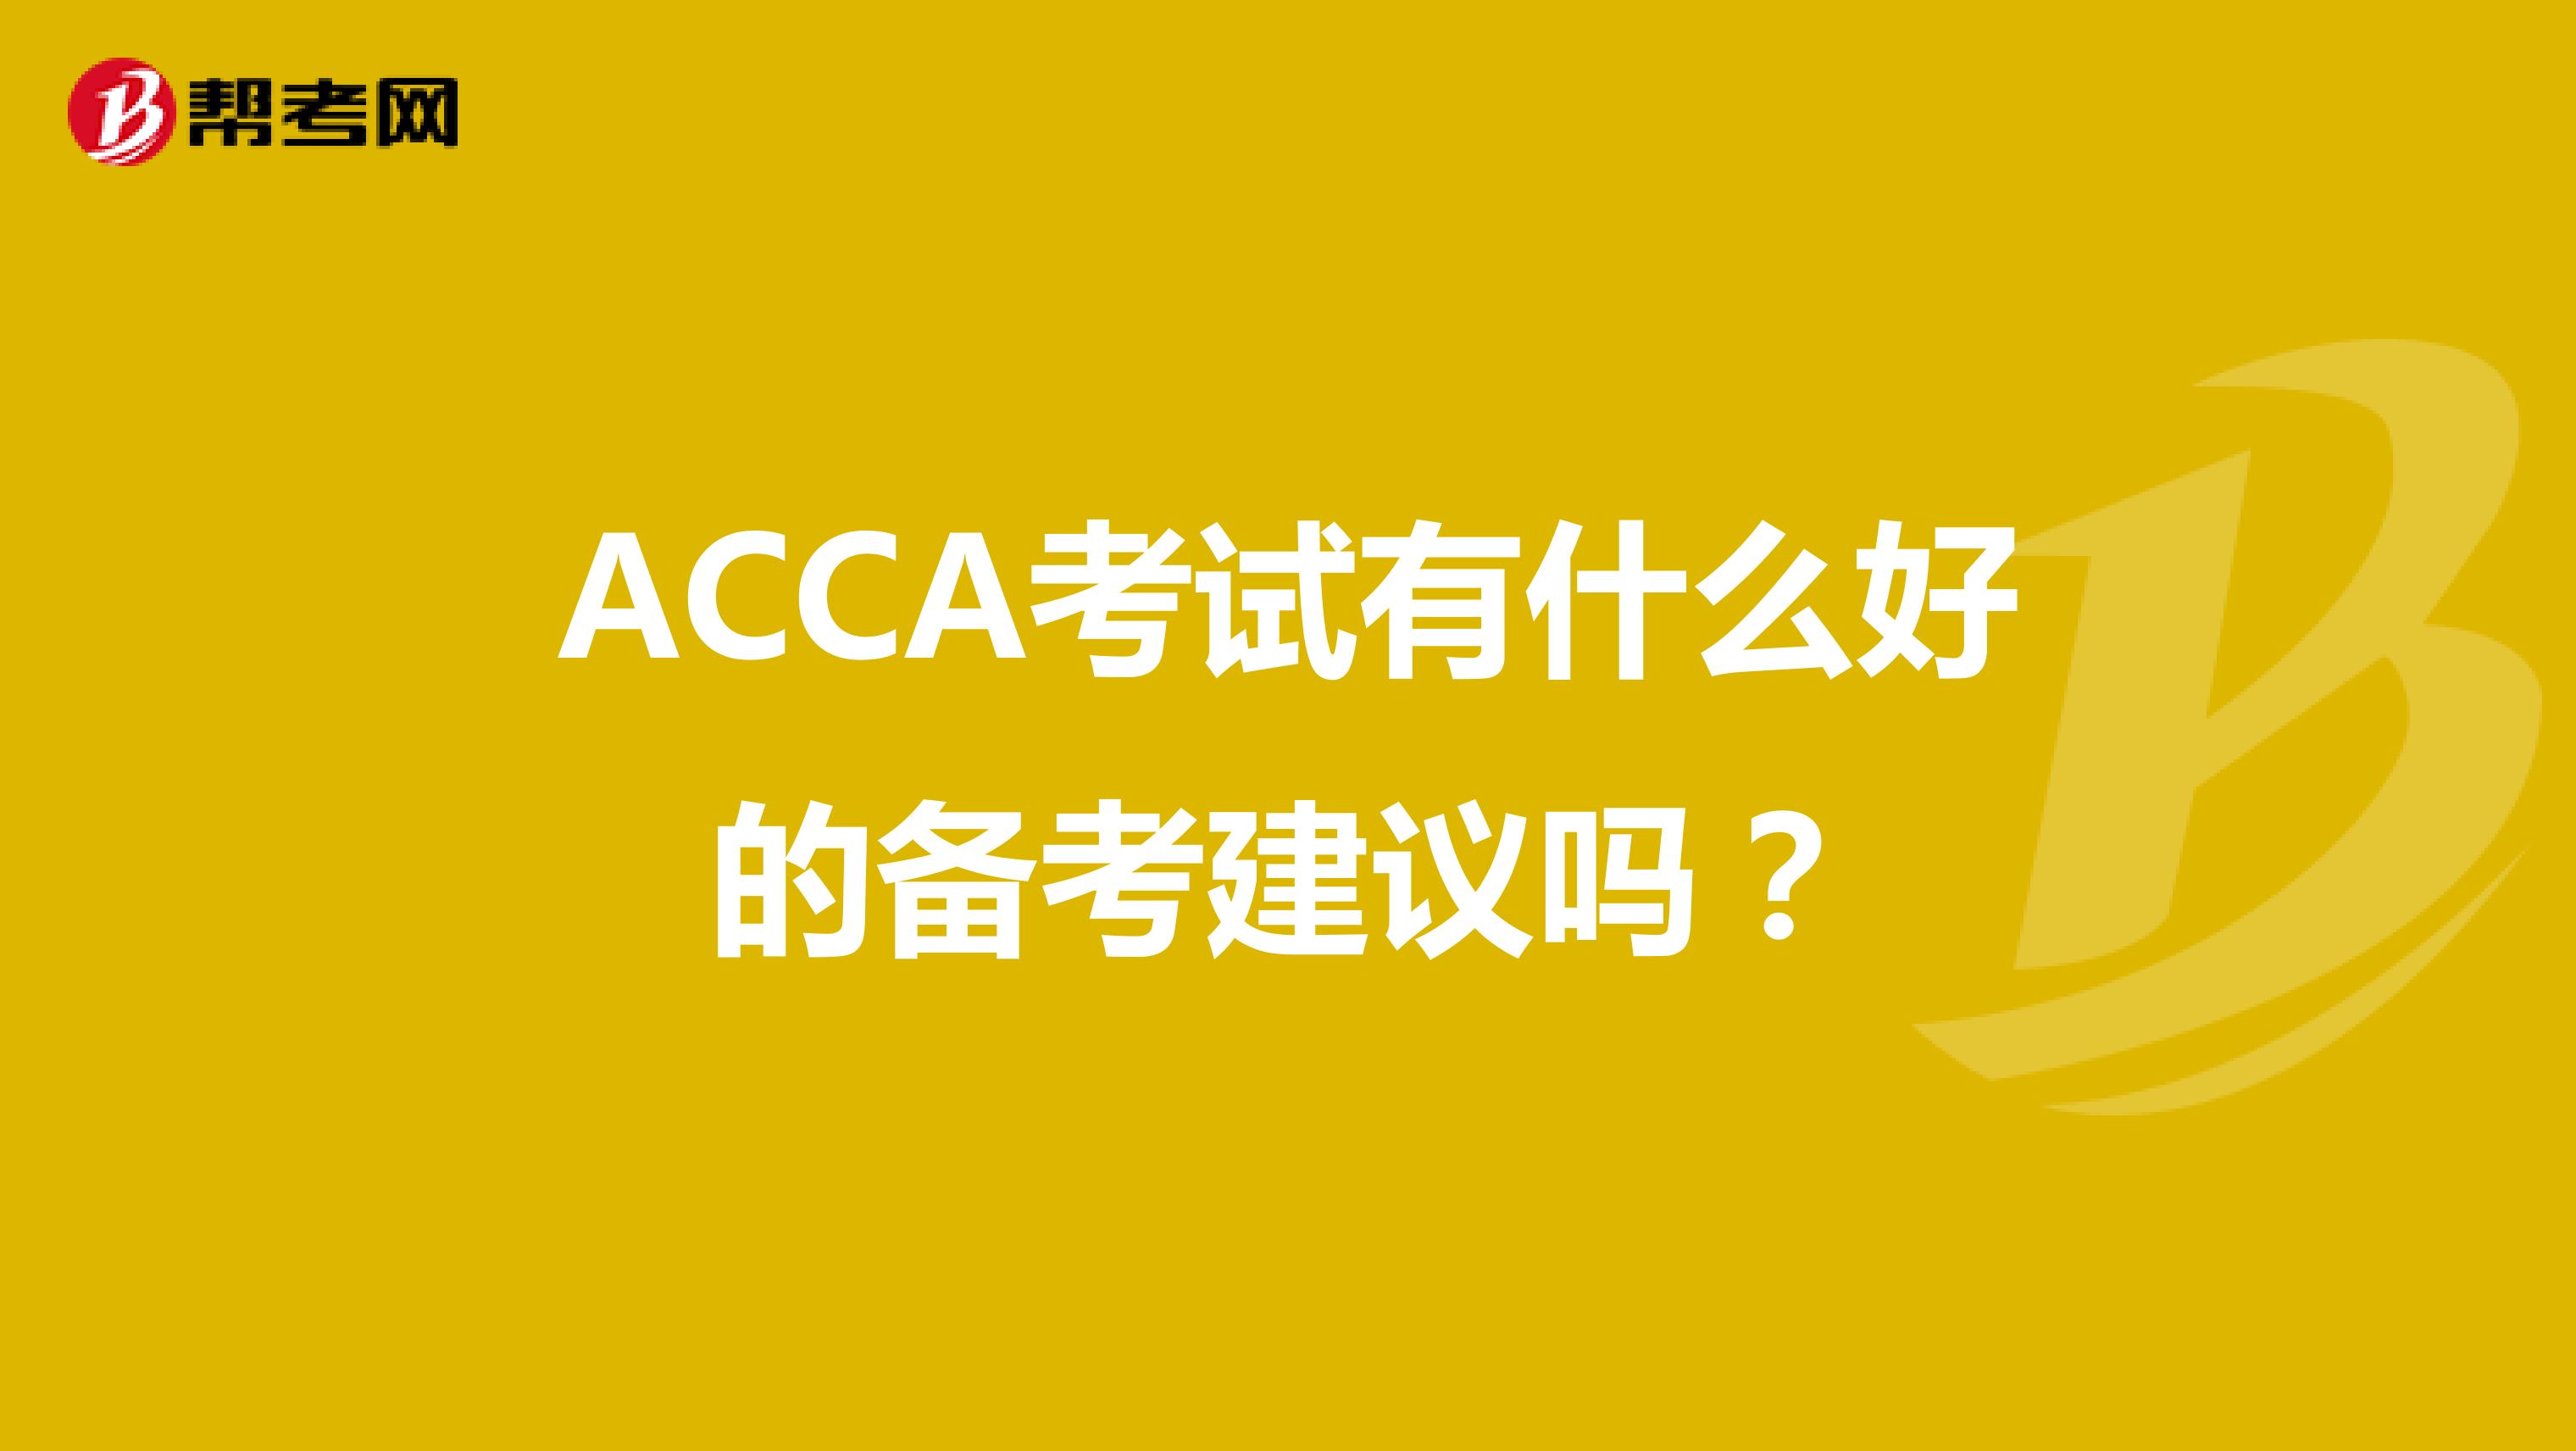 ACCA考试有什么好的备考建议吗？